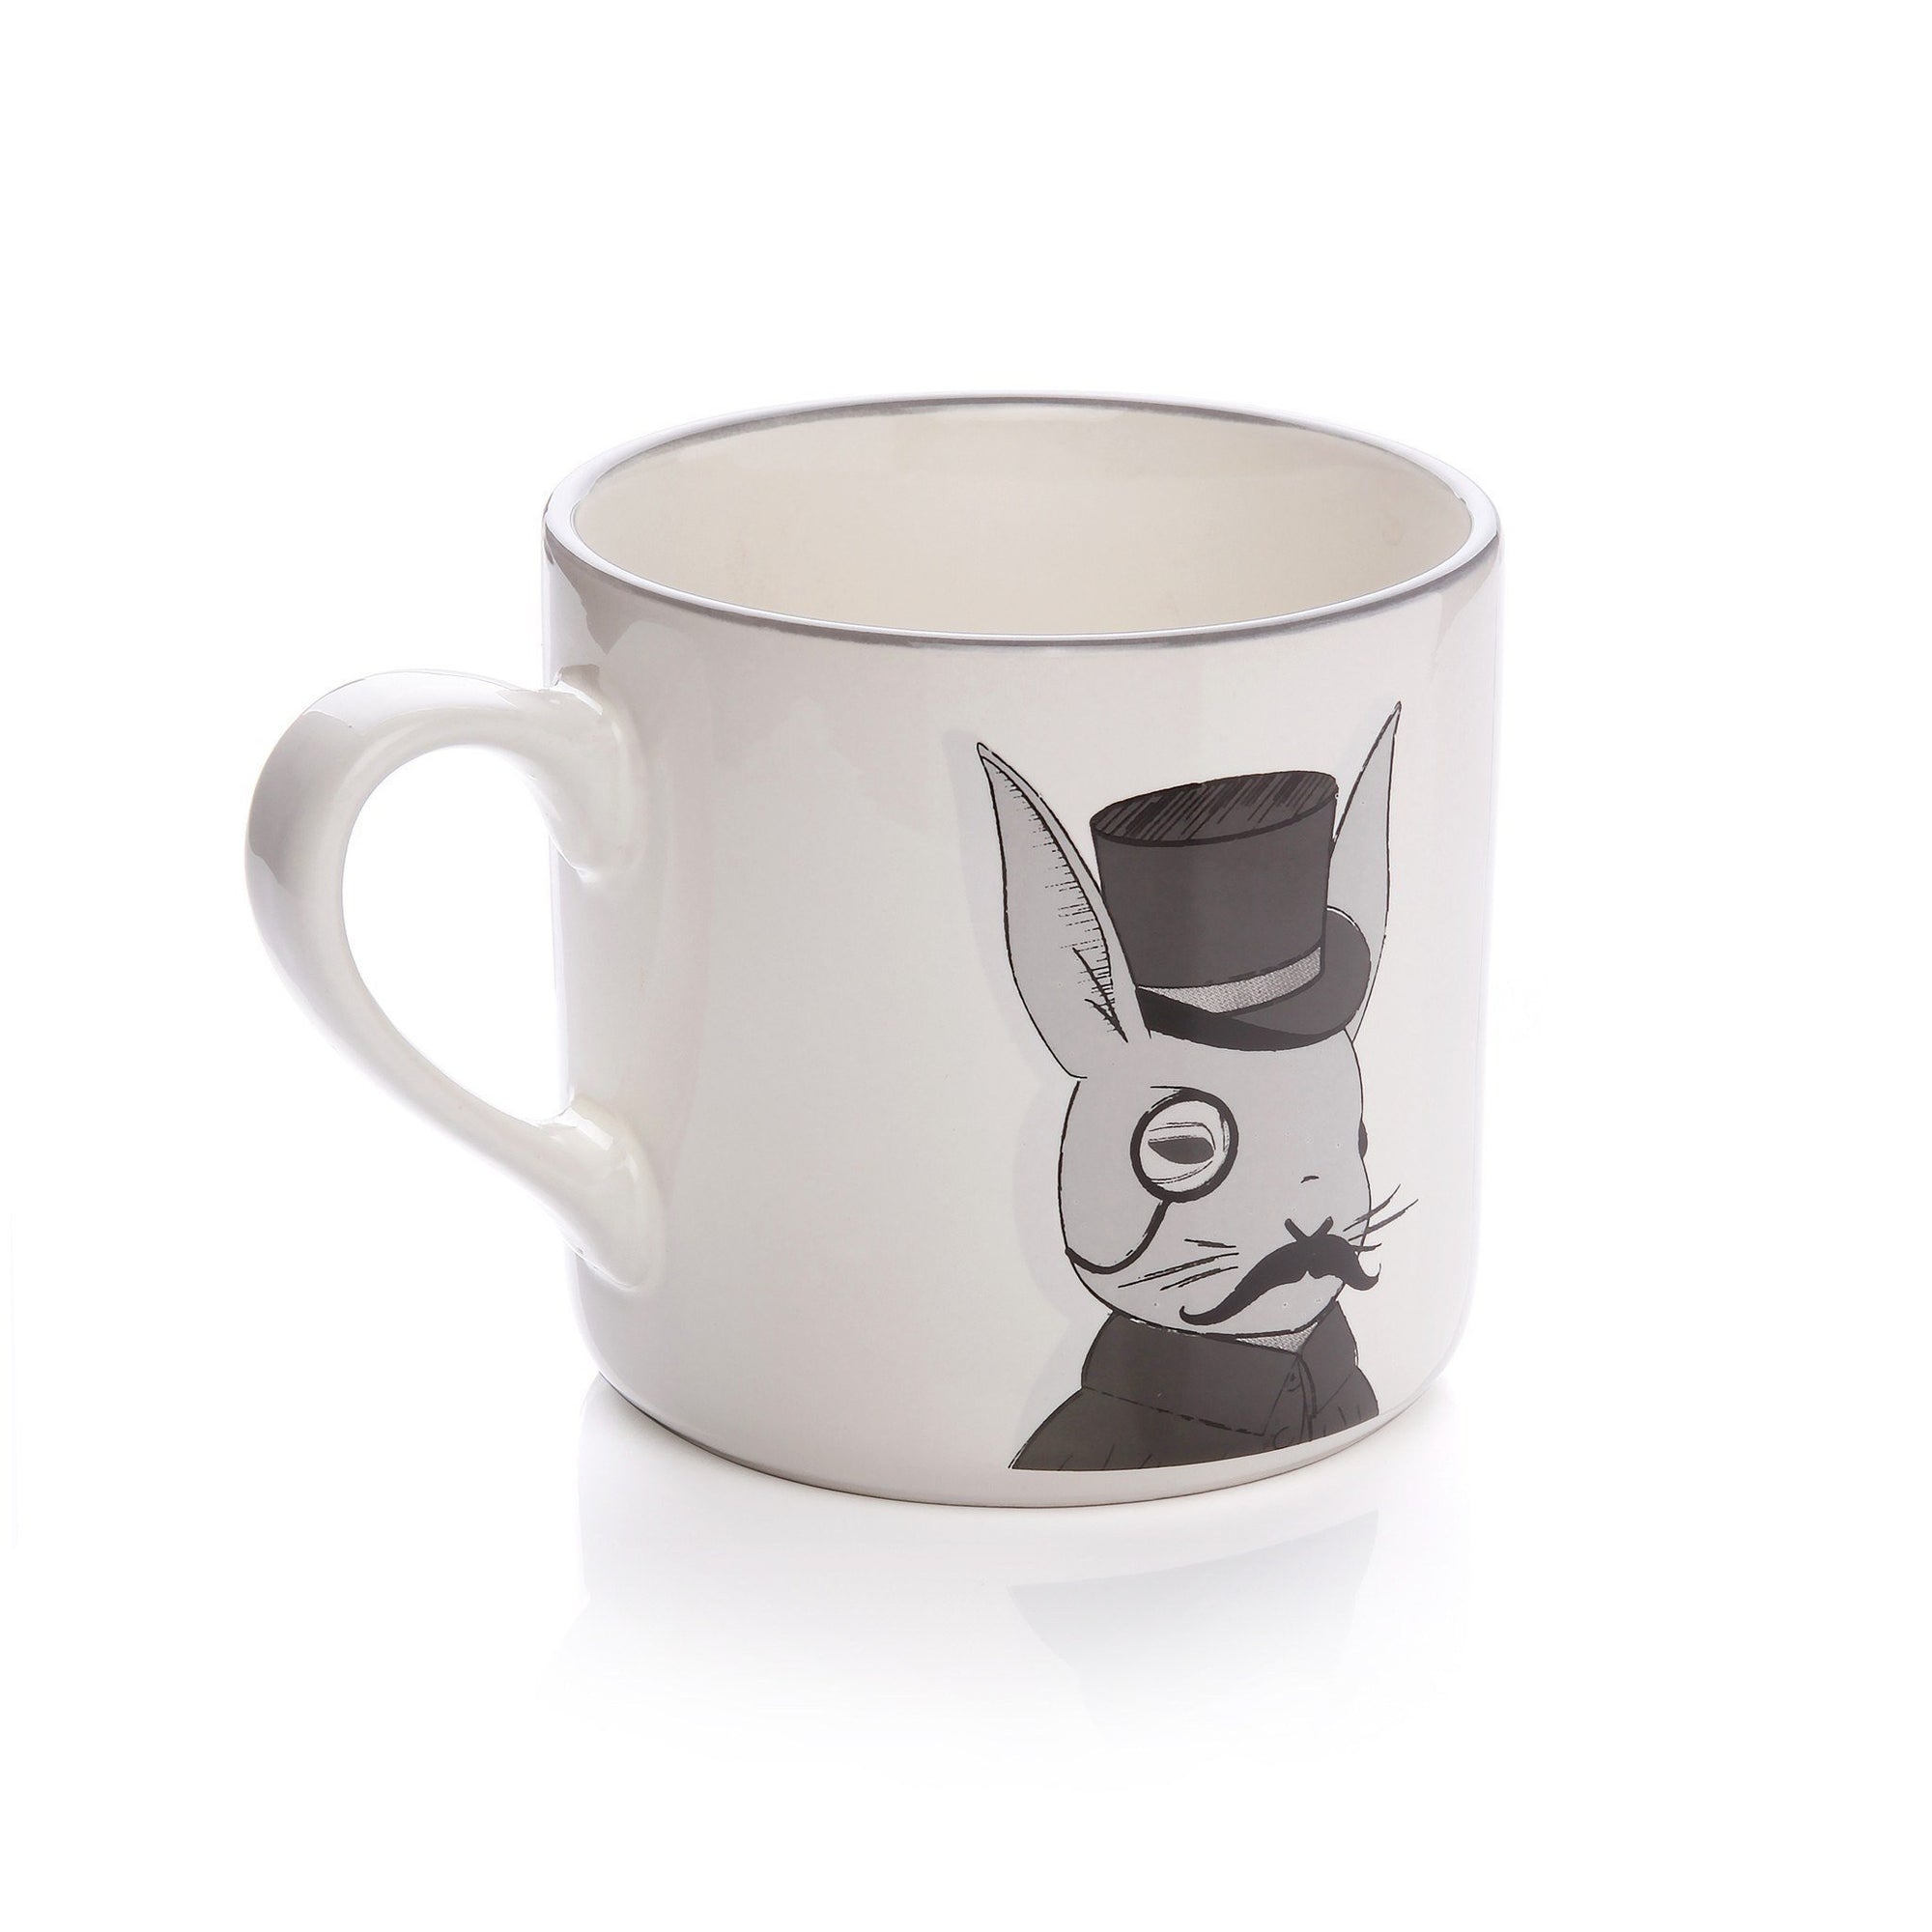 Mug - Sir Hoppington Mug